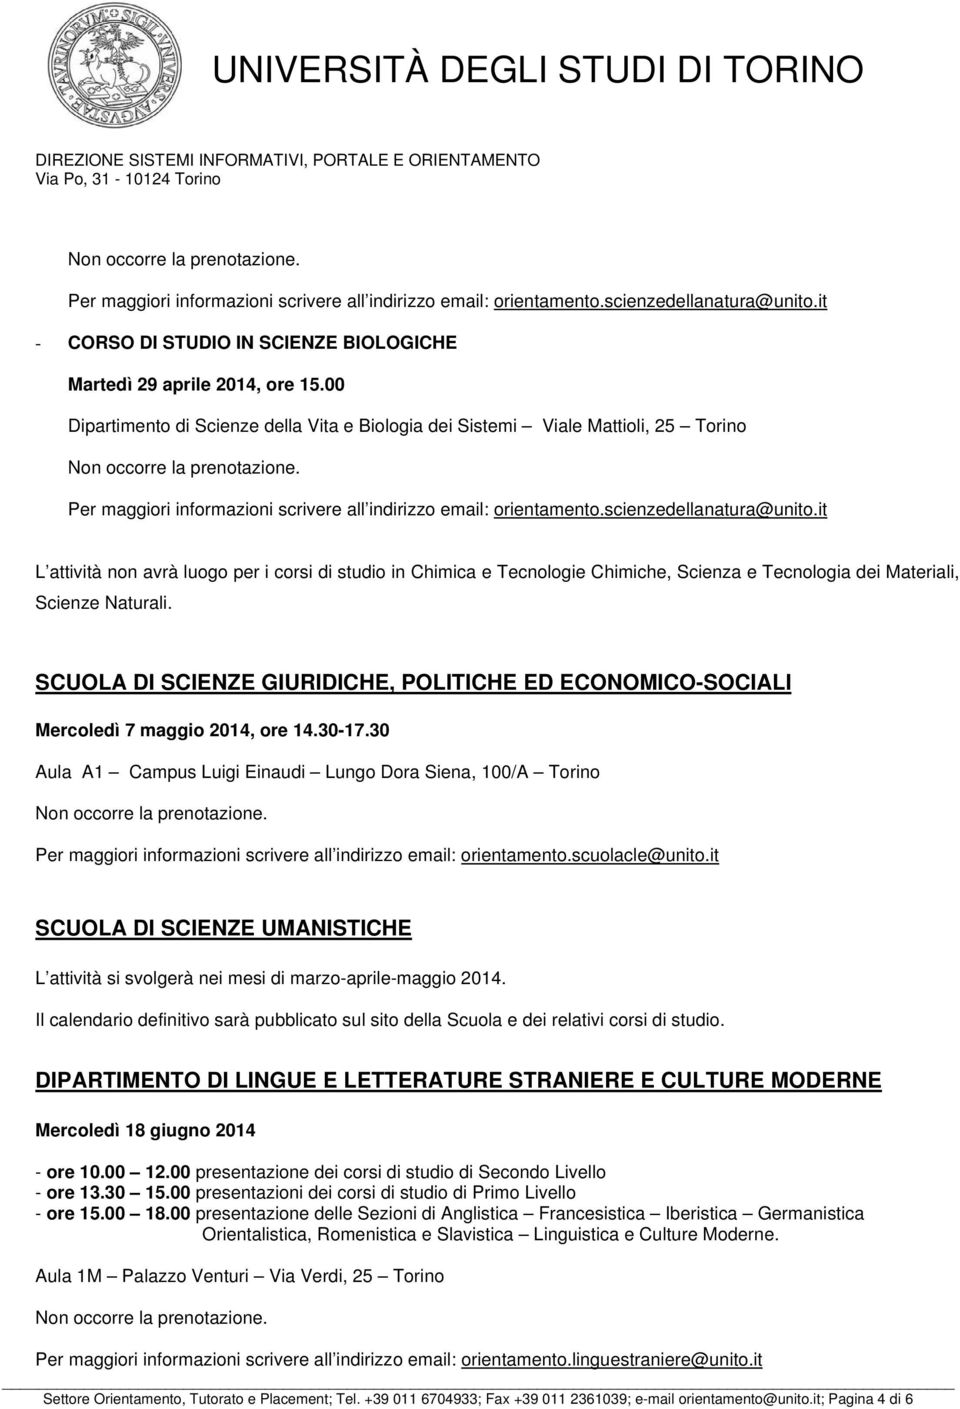 Materiali, Scienze Naturali. SCUOLA DI SCIENZE GIURIDICHE, POLITICHE ED ECONOMICO-SOCIALI Mercoledì 7 maggio 2014, ore 14.30-17.